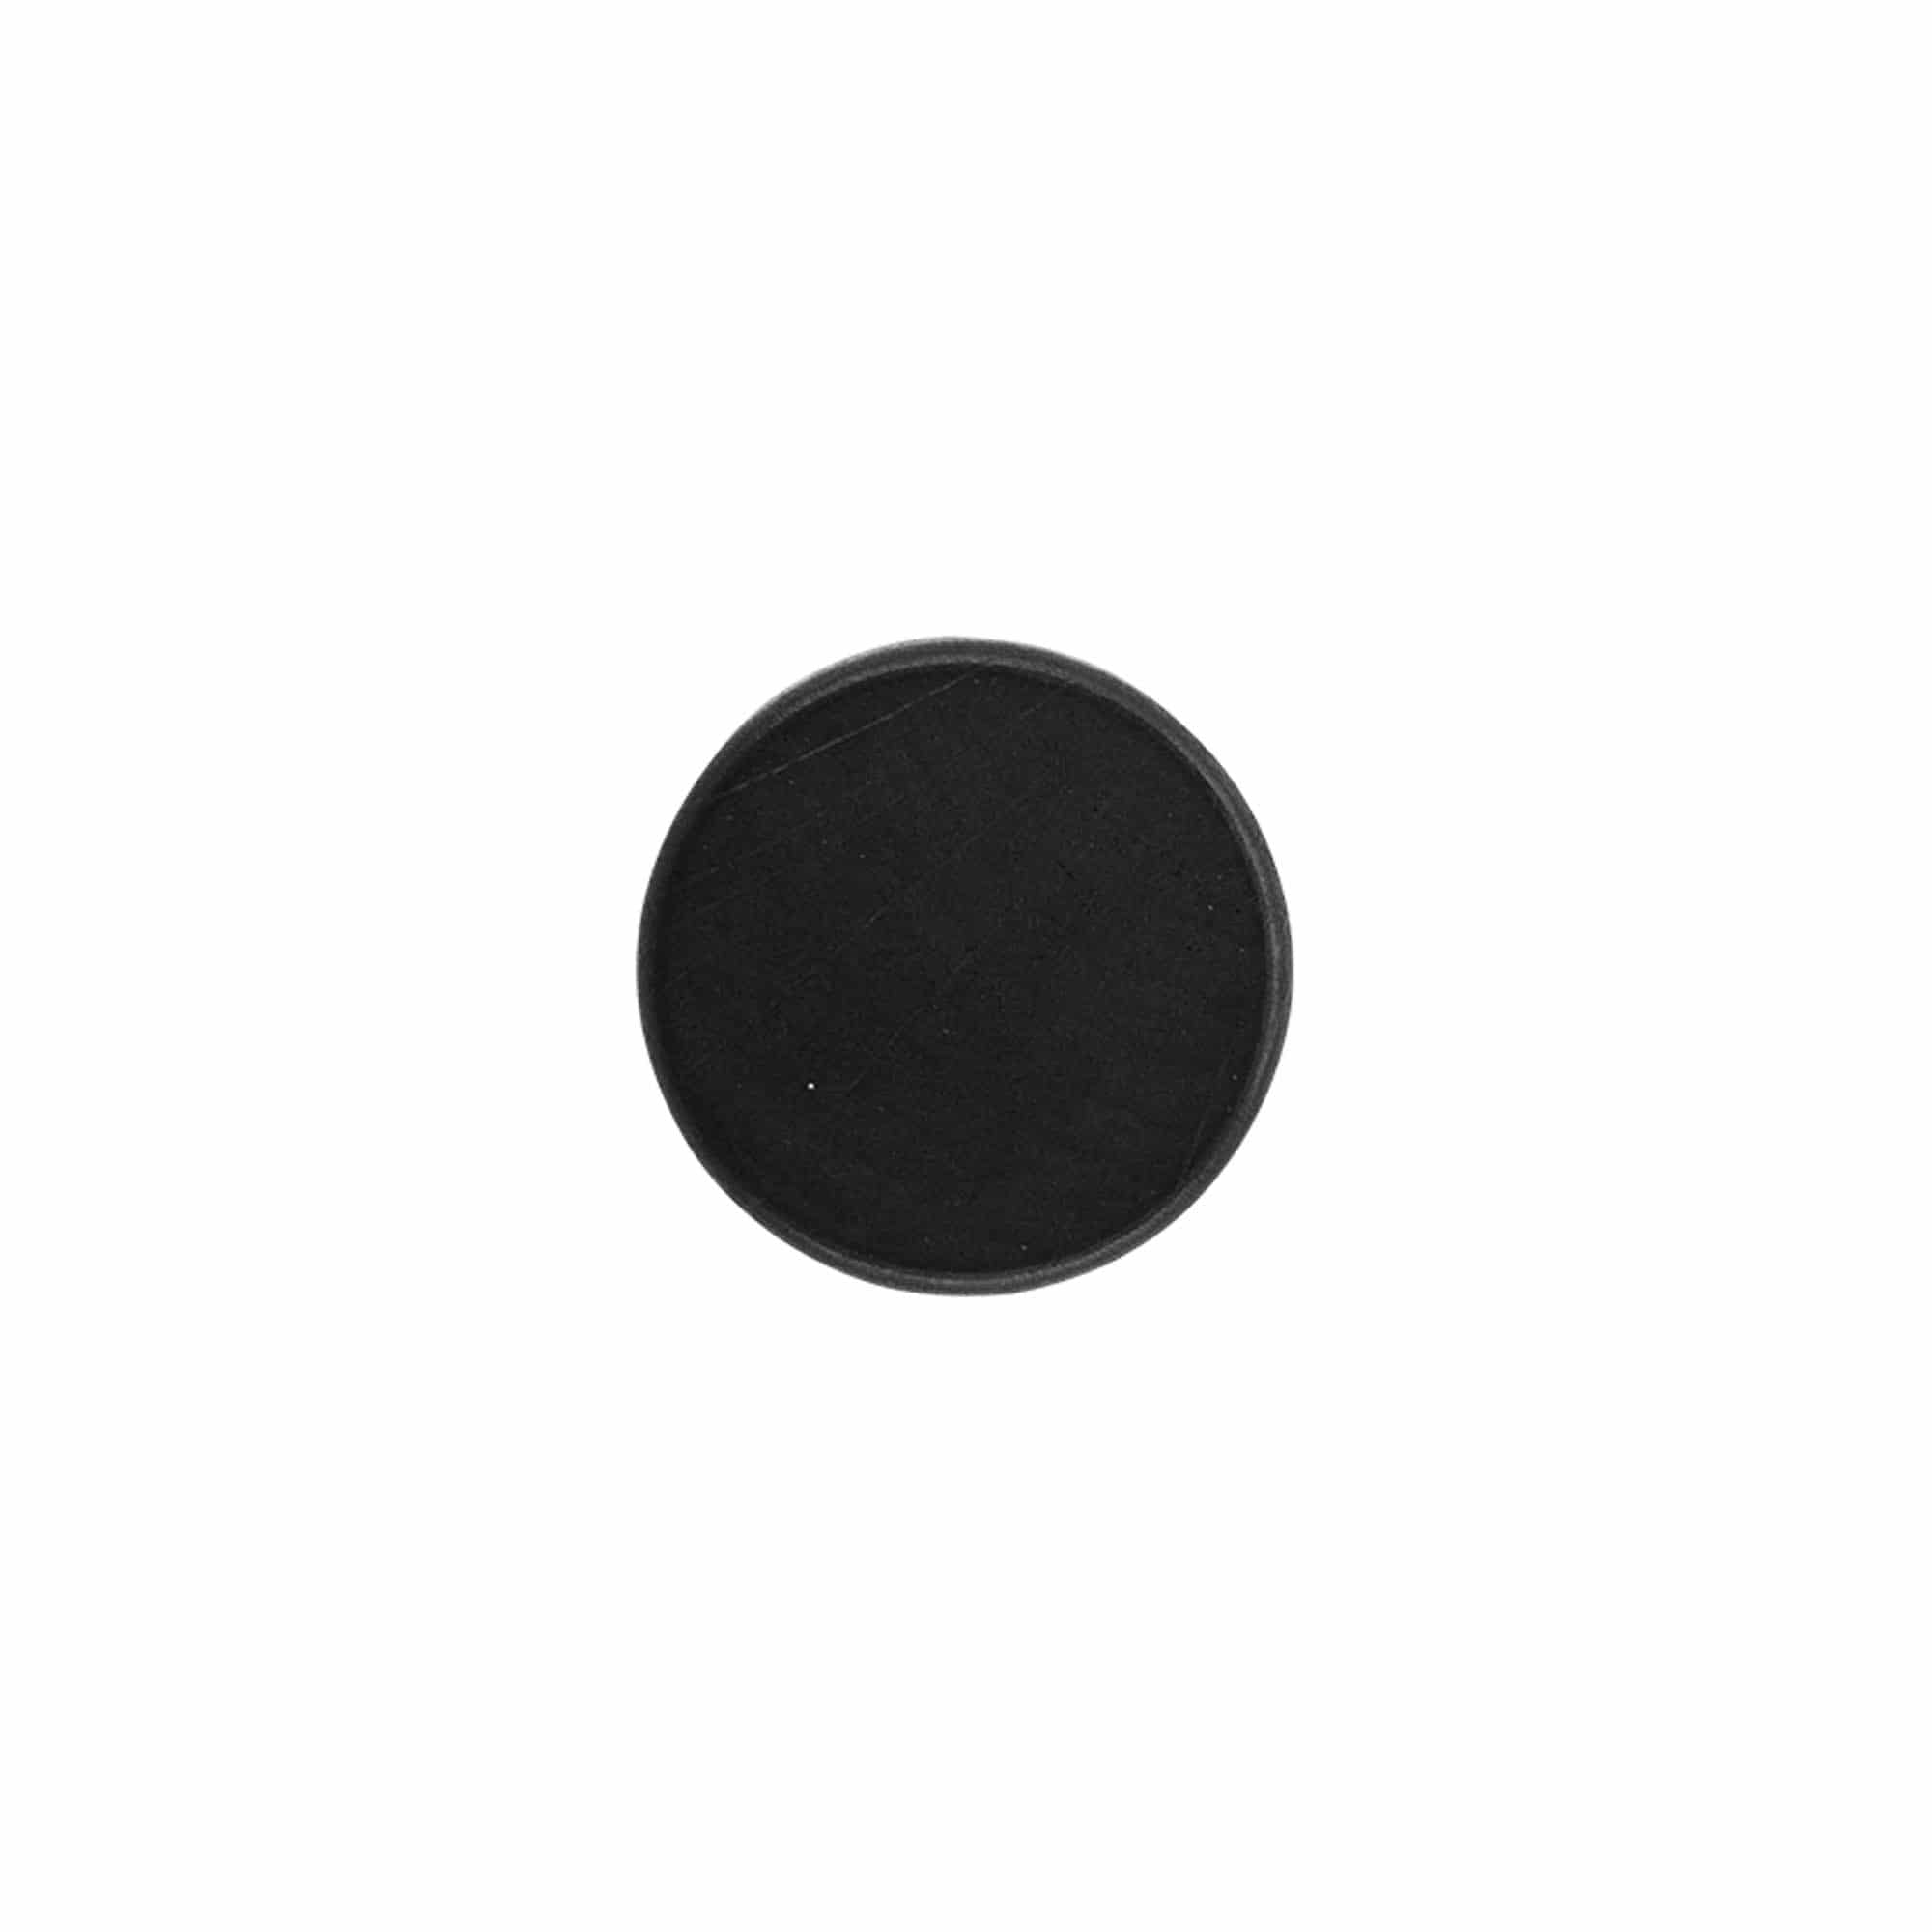 Dopkurk, 19 mm, hout, zwart, voor monding: kurk